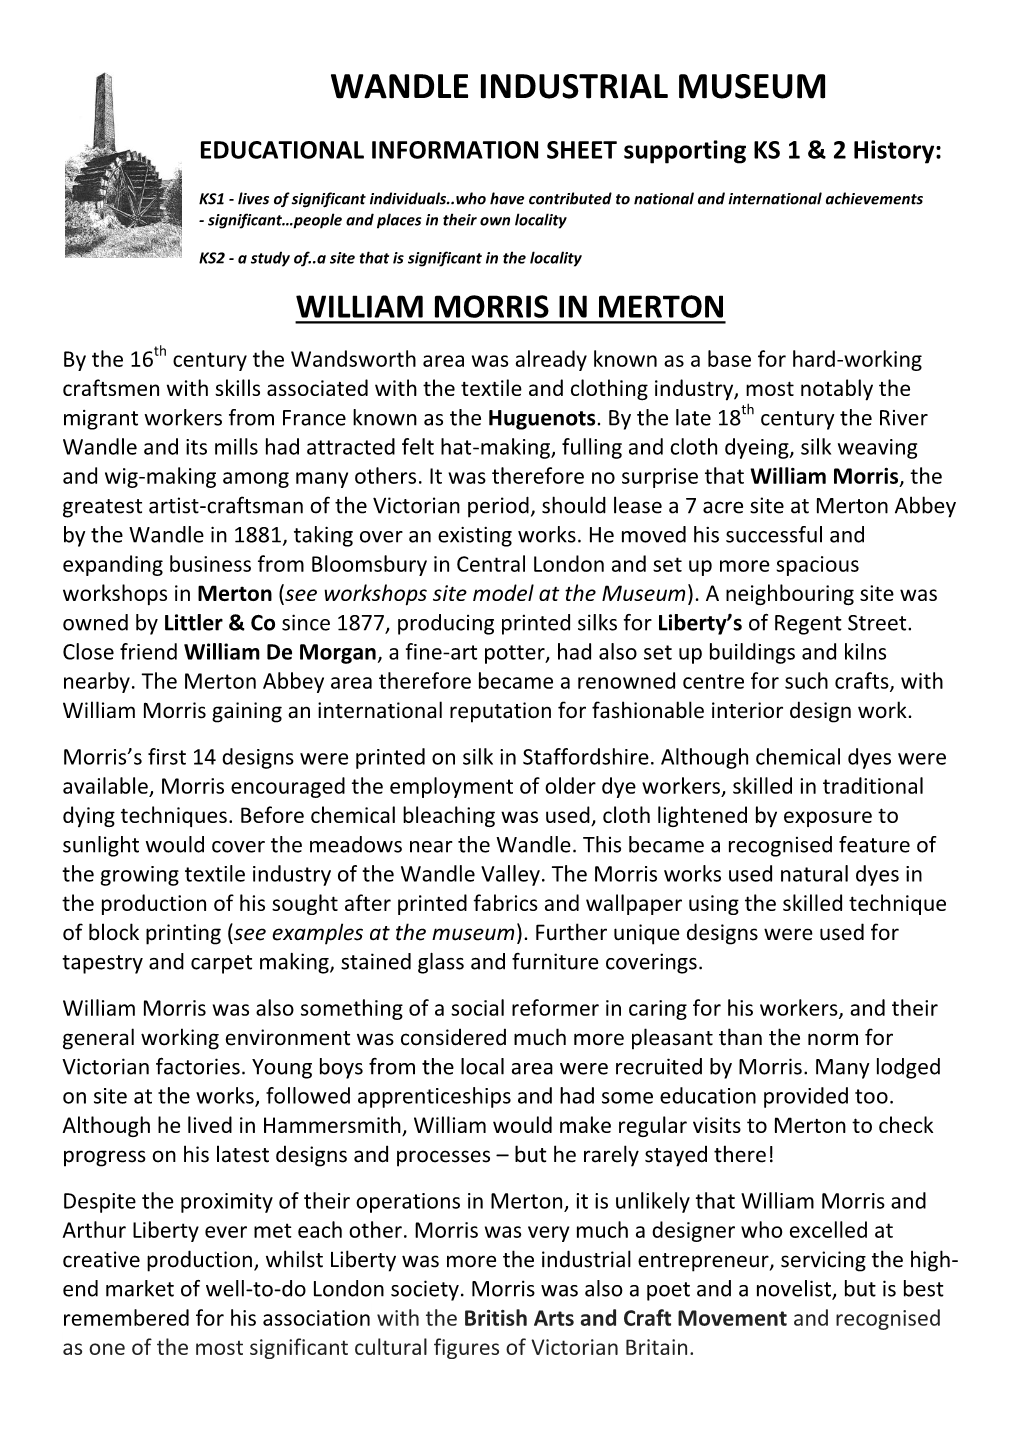 William Morris in Merton